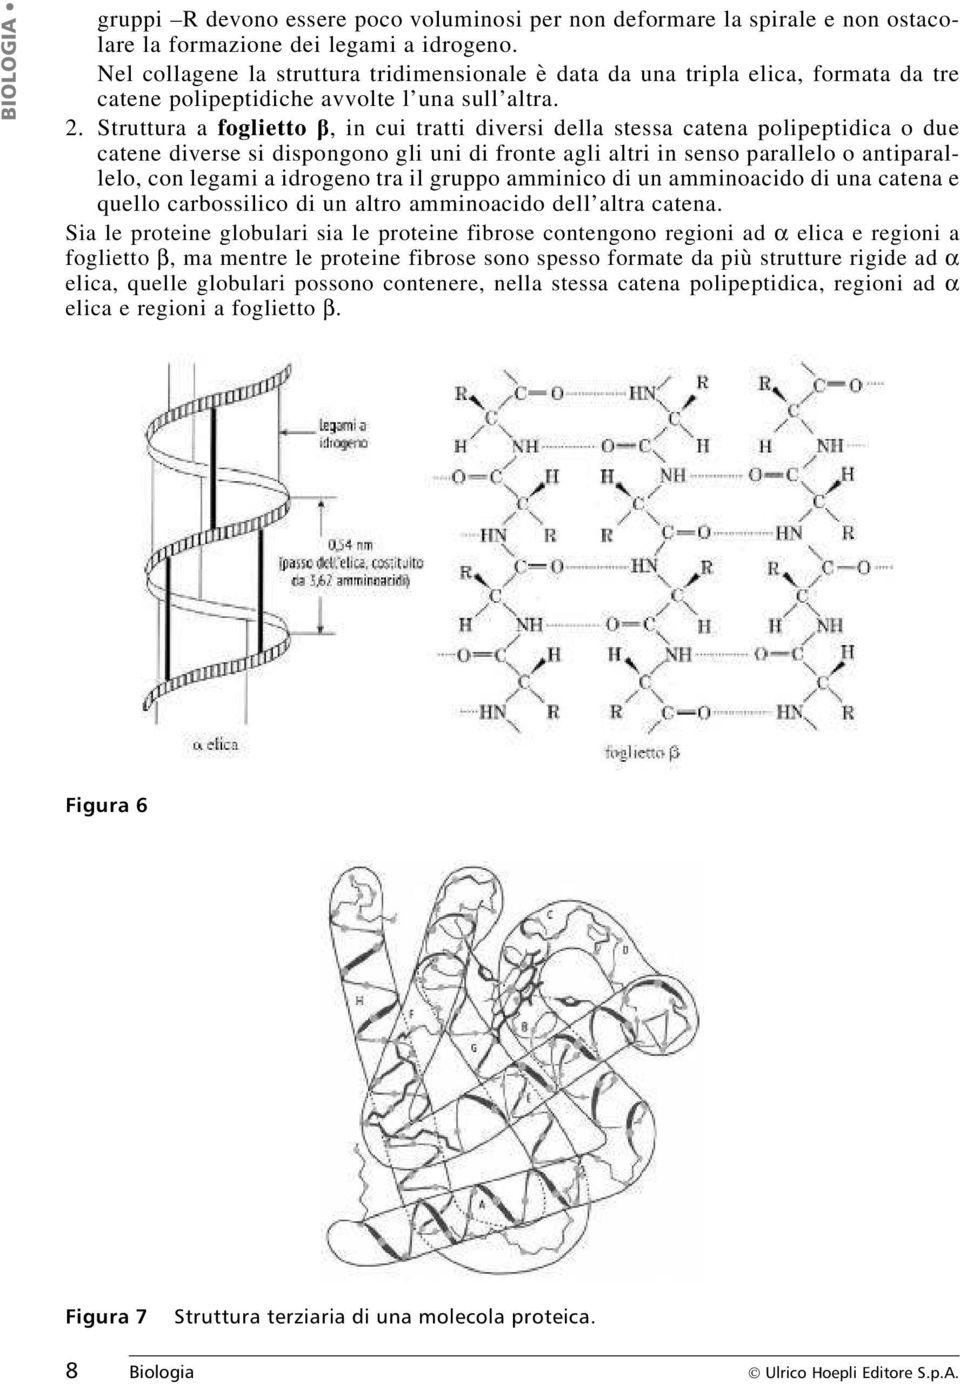 Struttura a foglietto b, in cui tratti diversi della stessa catena polipeptidica o due catene diverse si dispongono gli uni di fronte agli altri in senso parallelo o antiparallelo, con legami a